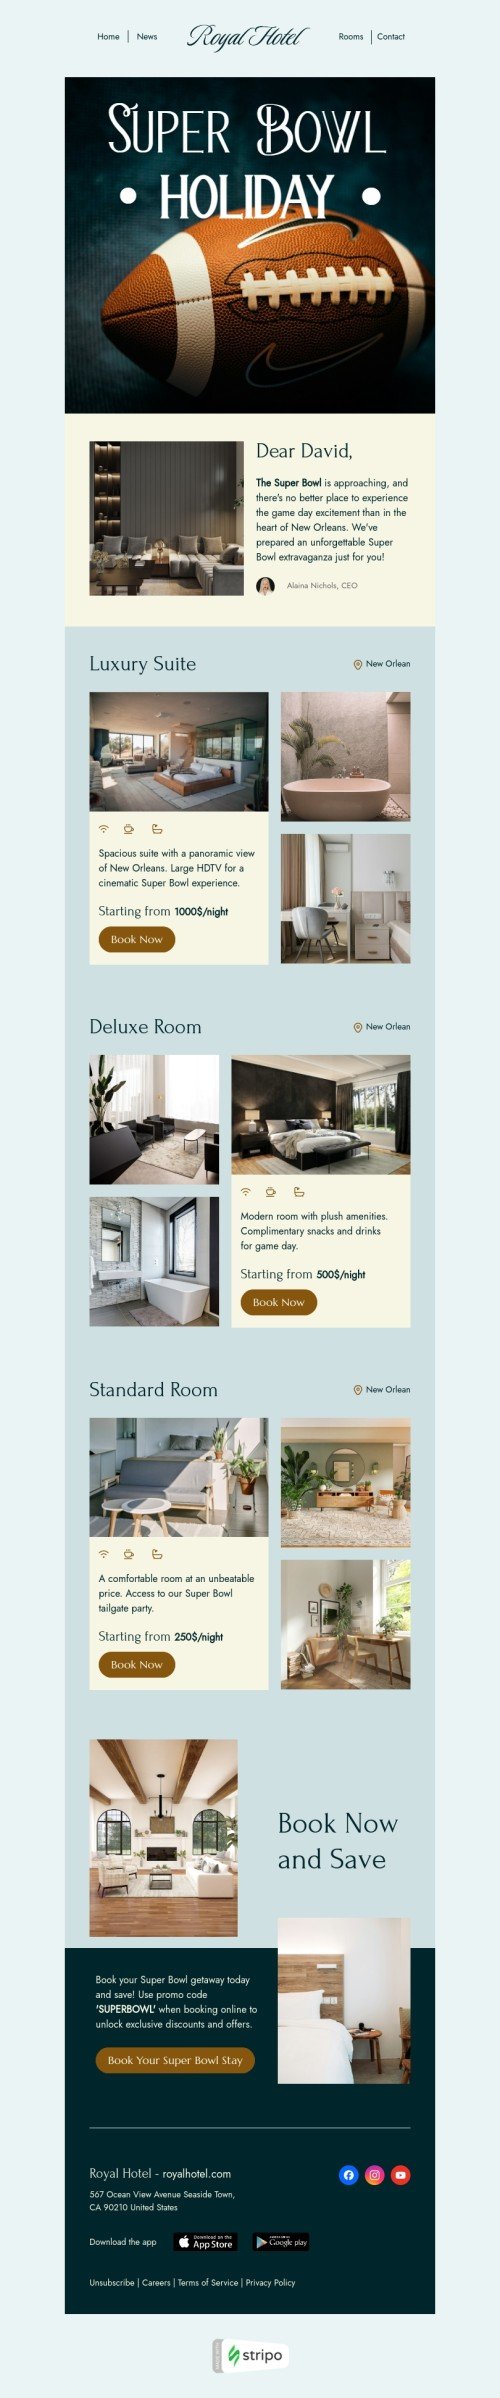 Modèle de courrier électronique Super Bowl «Suite de luxe» pour le secteur hôtels Affichage mobile